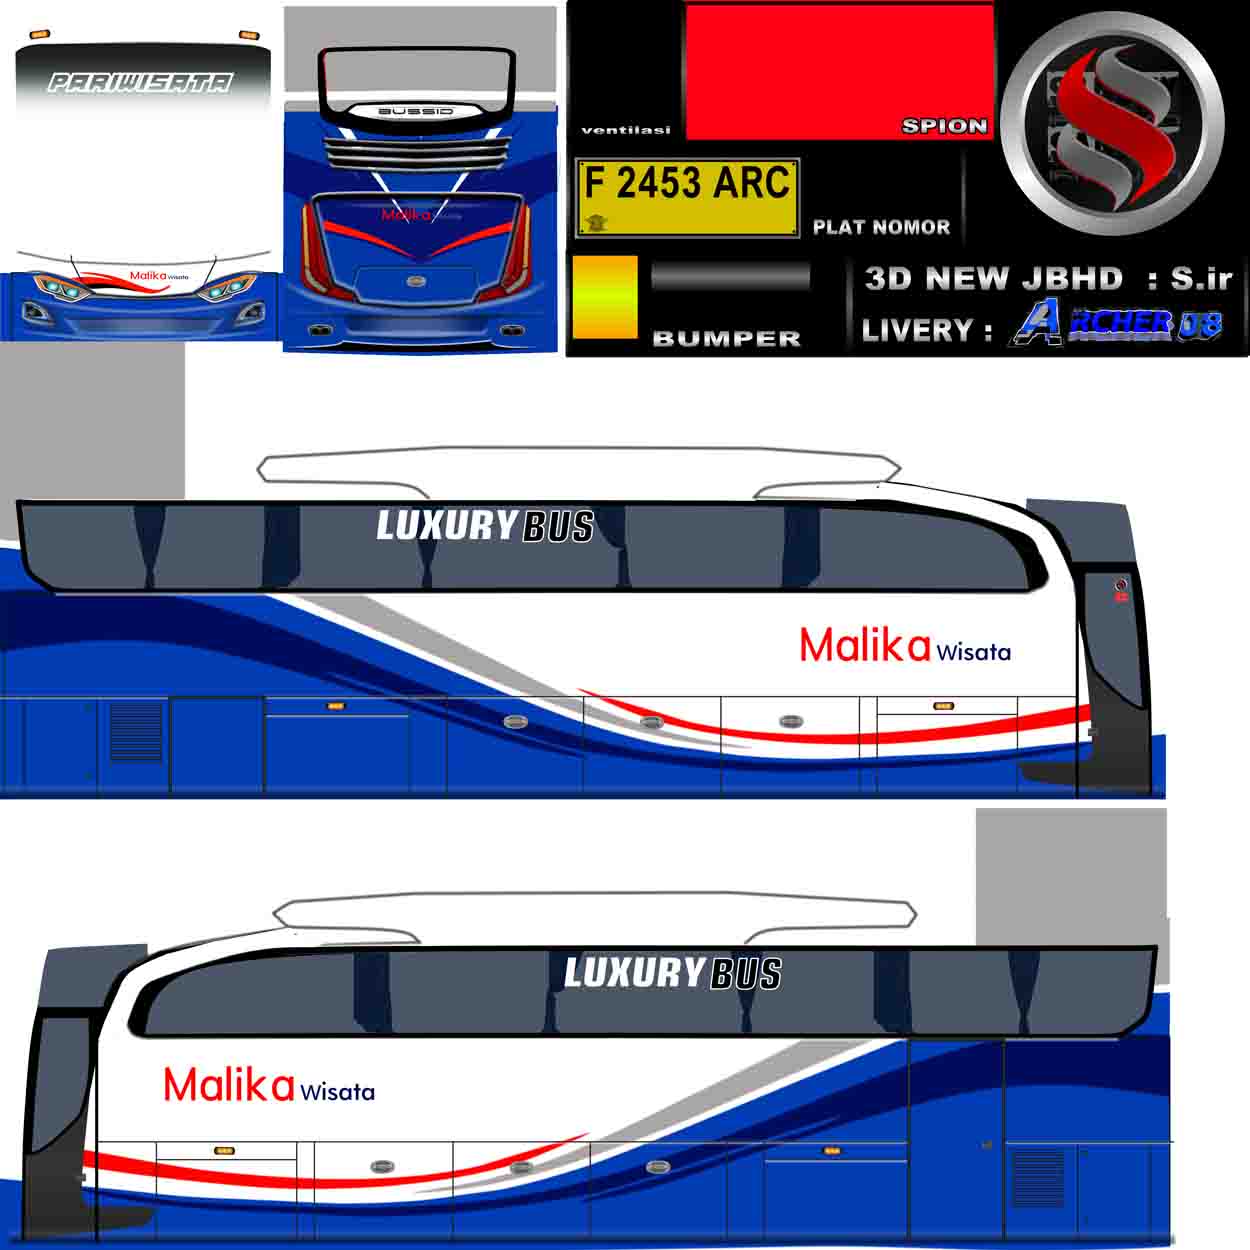 livery bus malika wisata